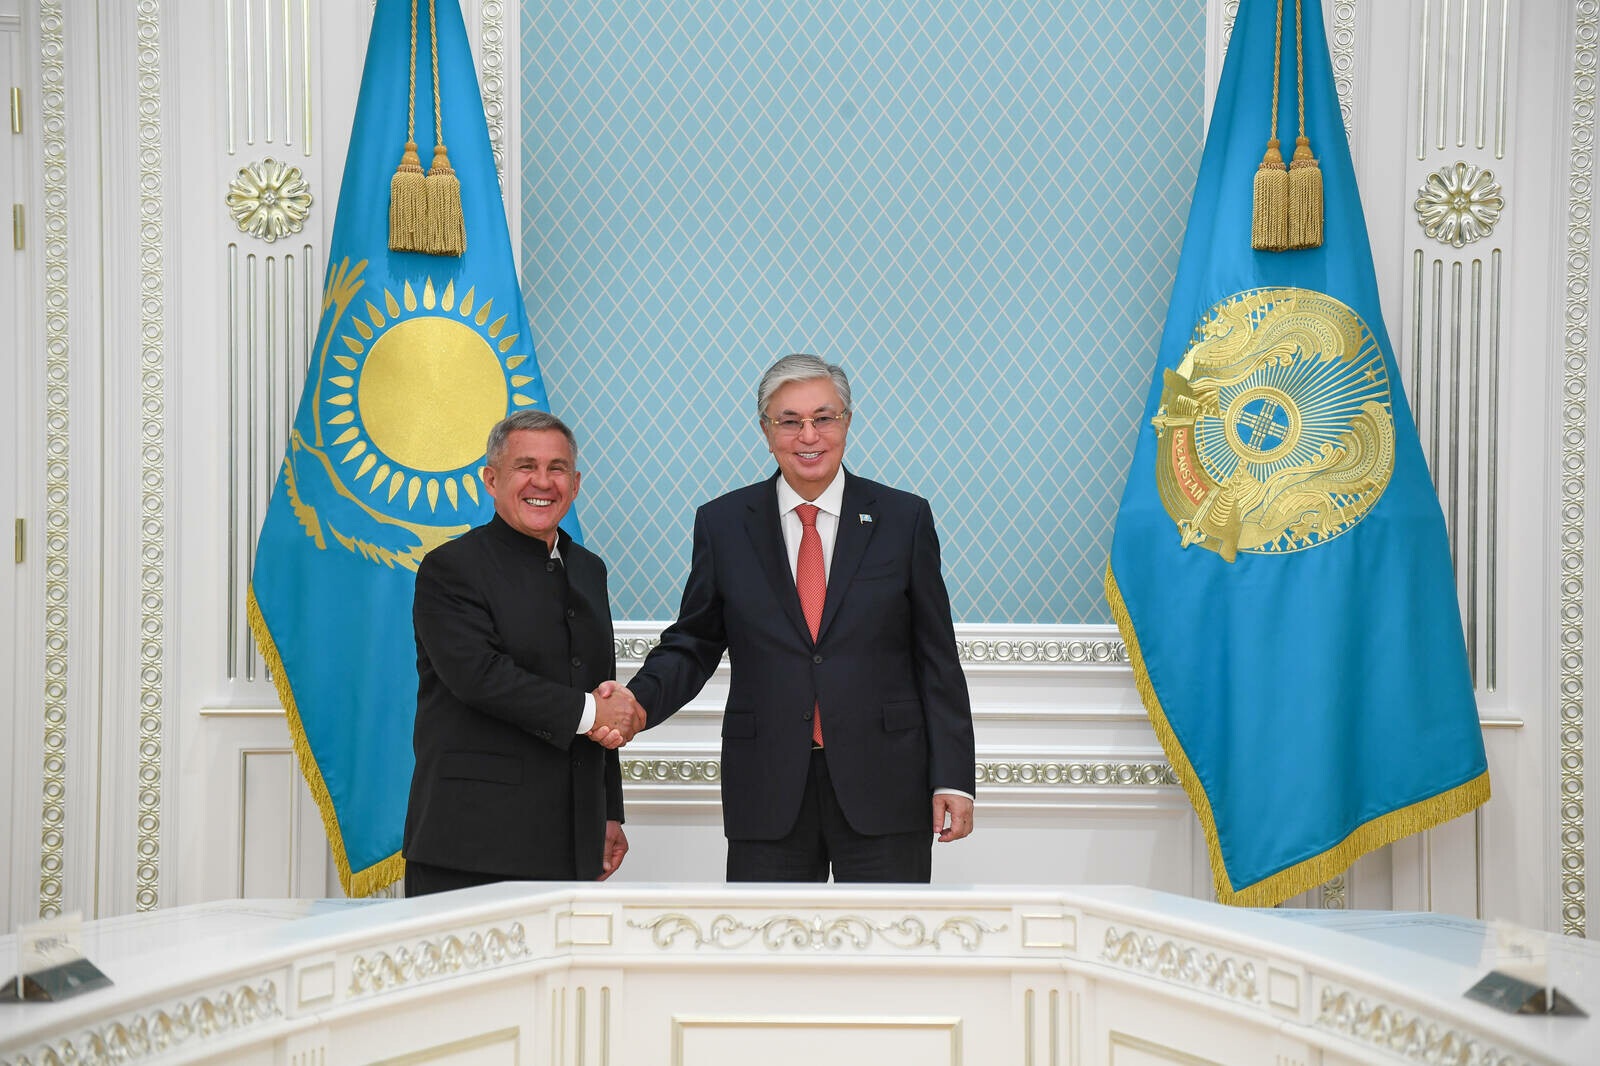 Токаев: Благодаря мудрому руководству Минниханова Татарстан в числе передовых регионов РФ